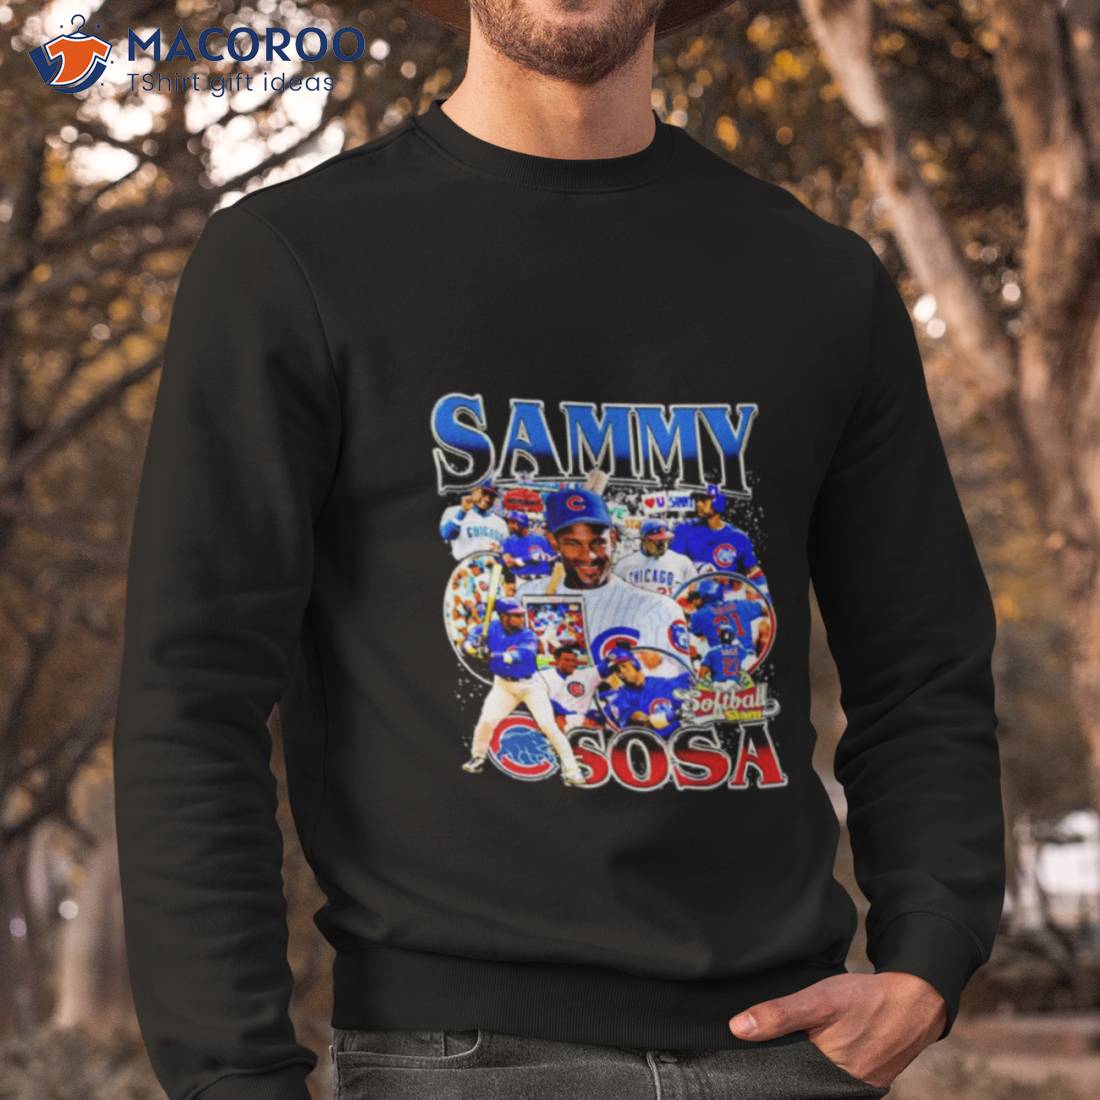 Sammy Sosa T-Shirts for Sale